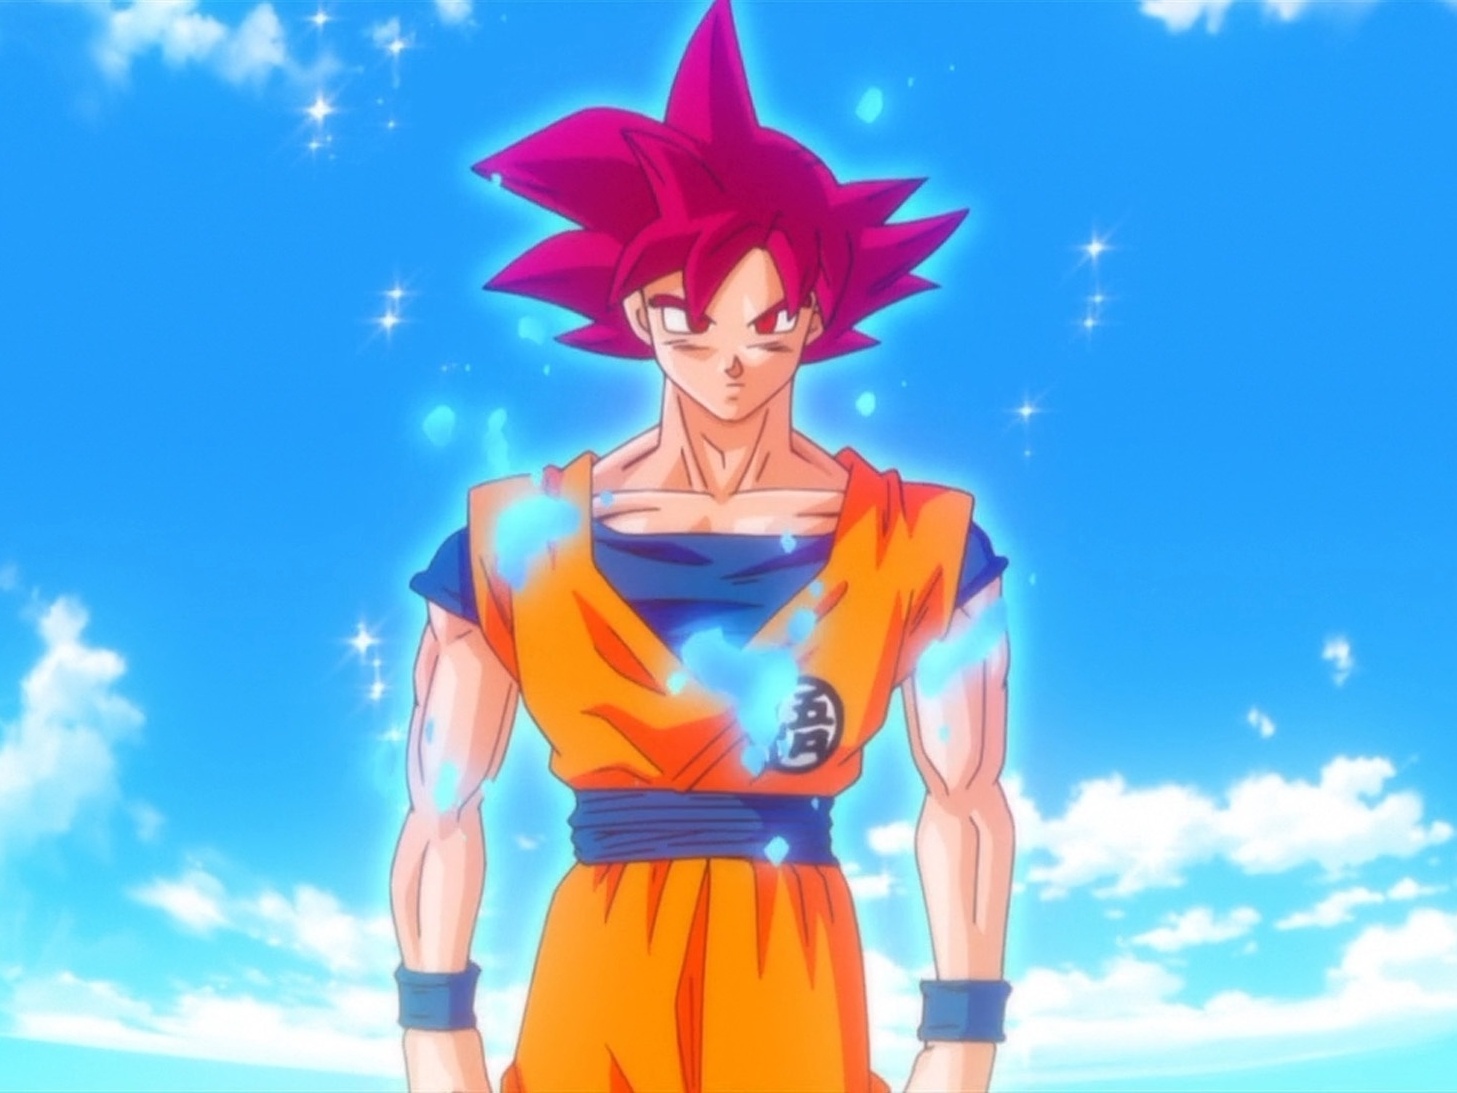 Será que dessa vez Goku faz frente? Bills Vs Goku Super Saiyajin Deus